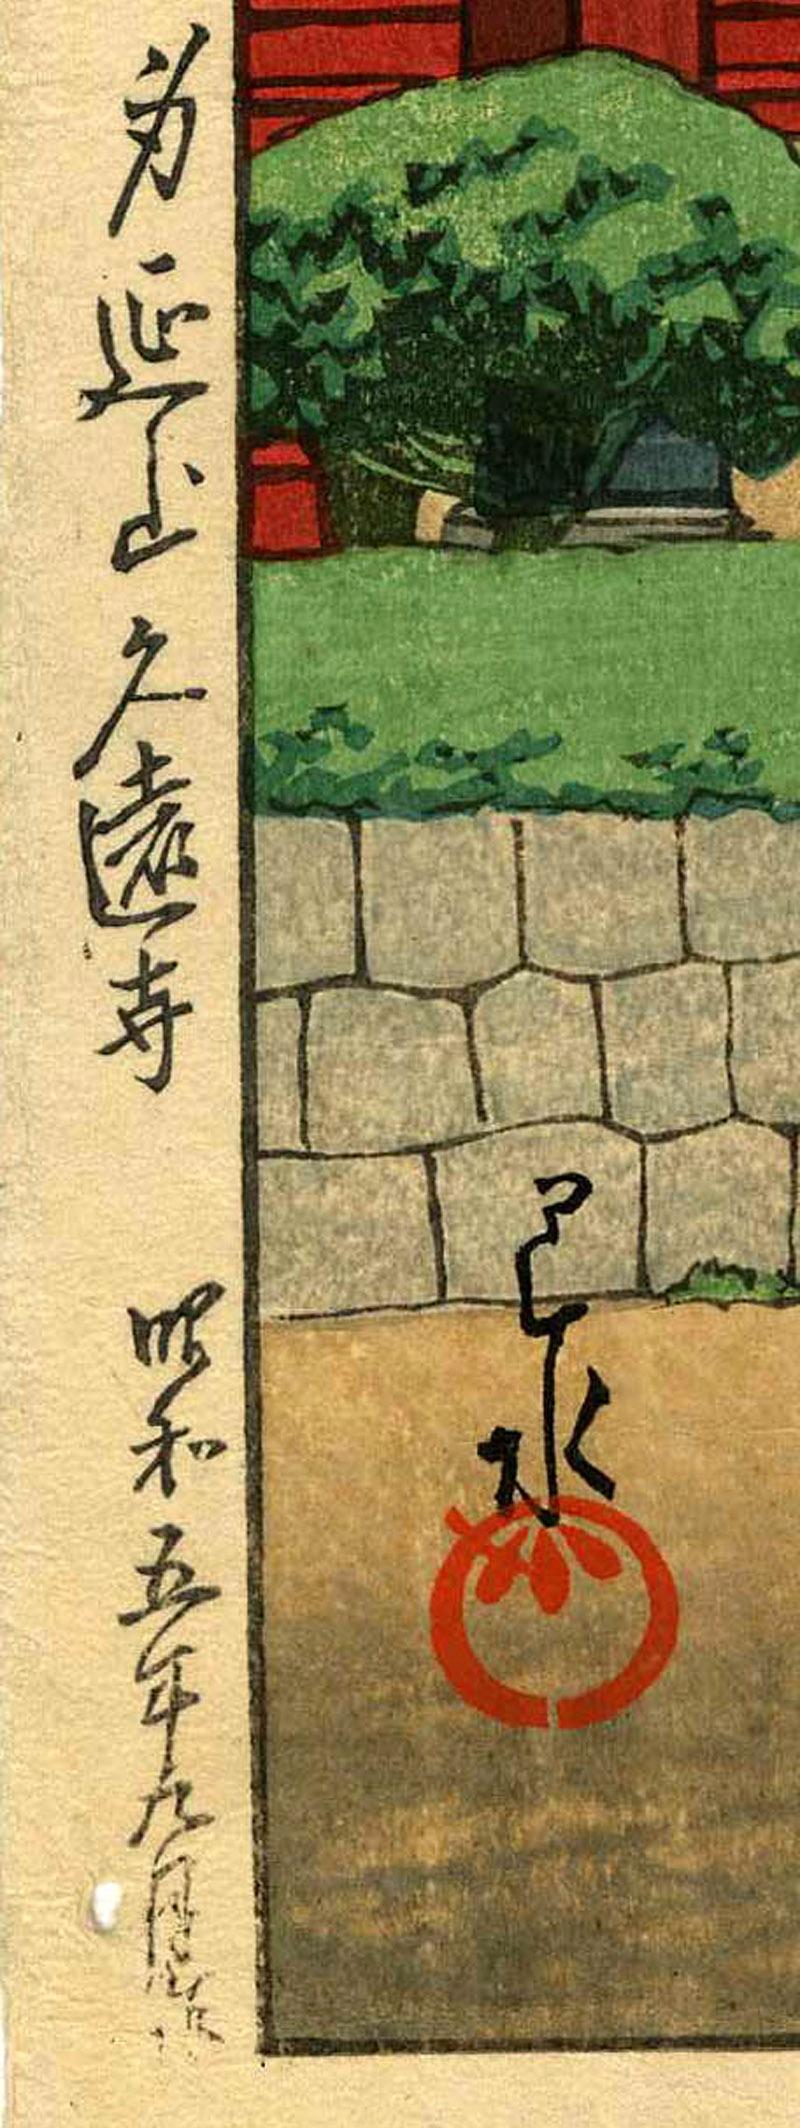 KuonTemple at Mount Minobu - Print by Kawase Hasui